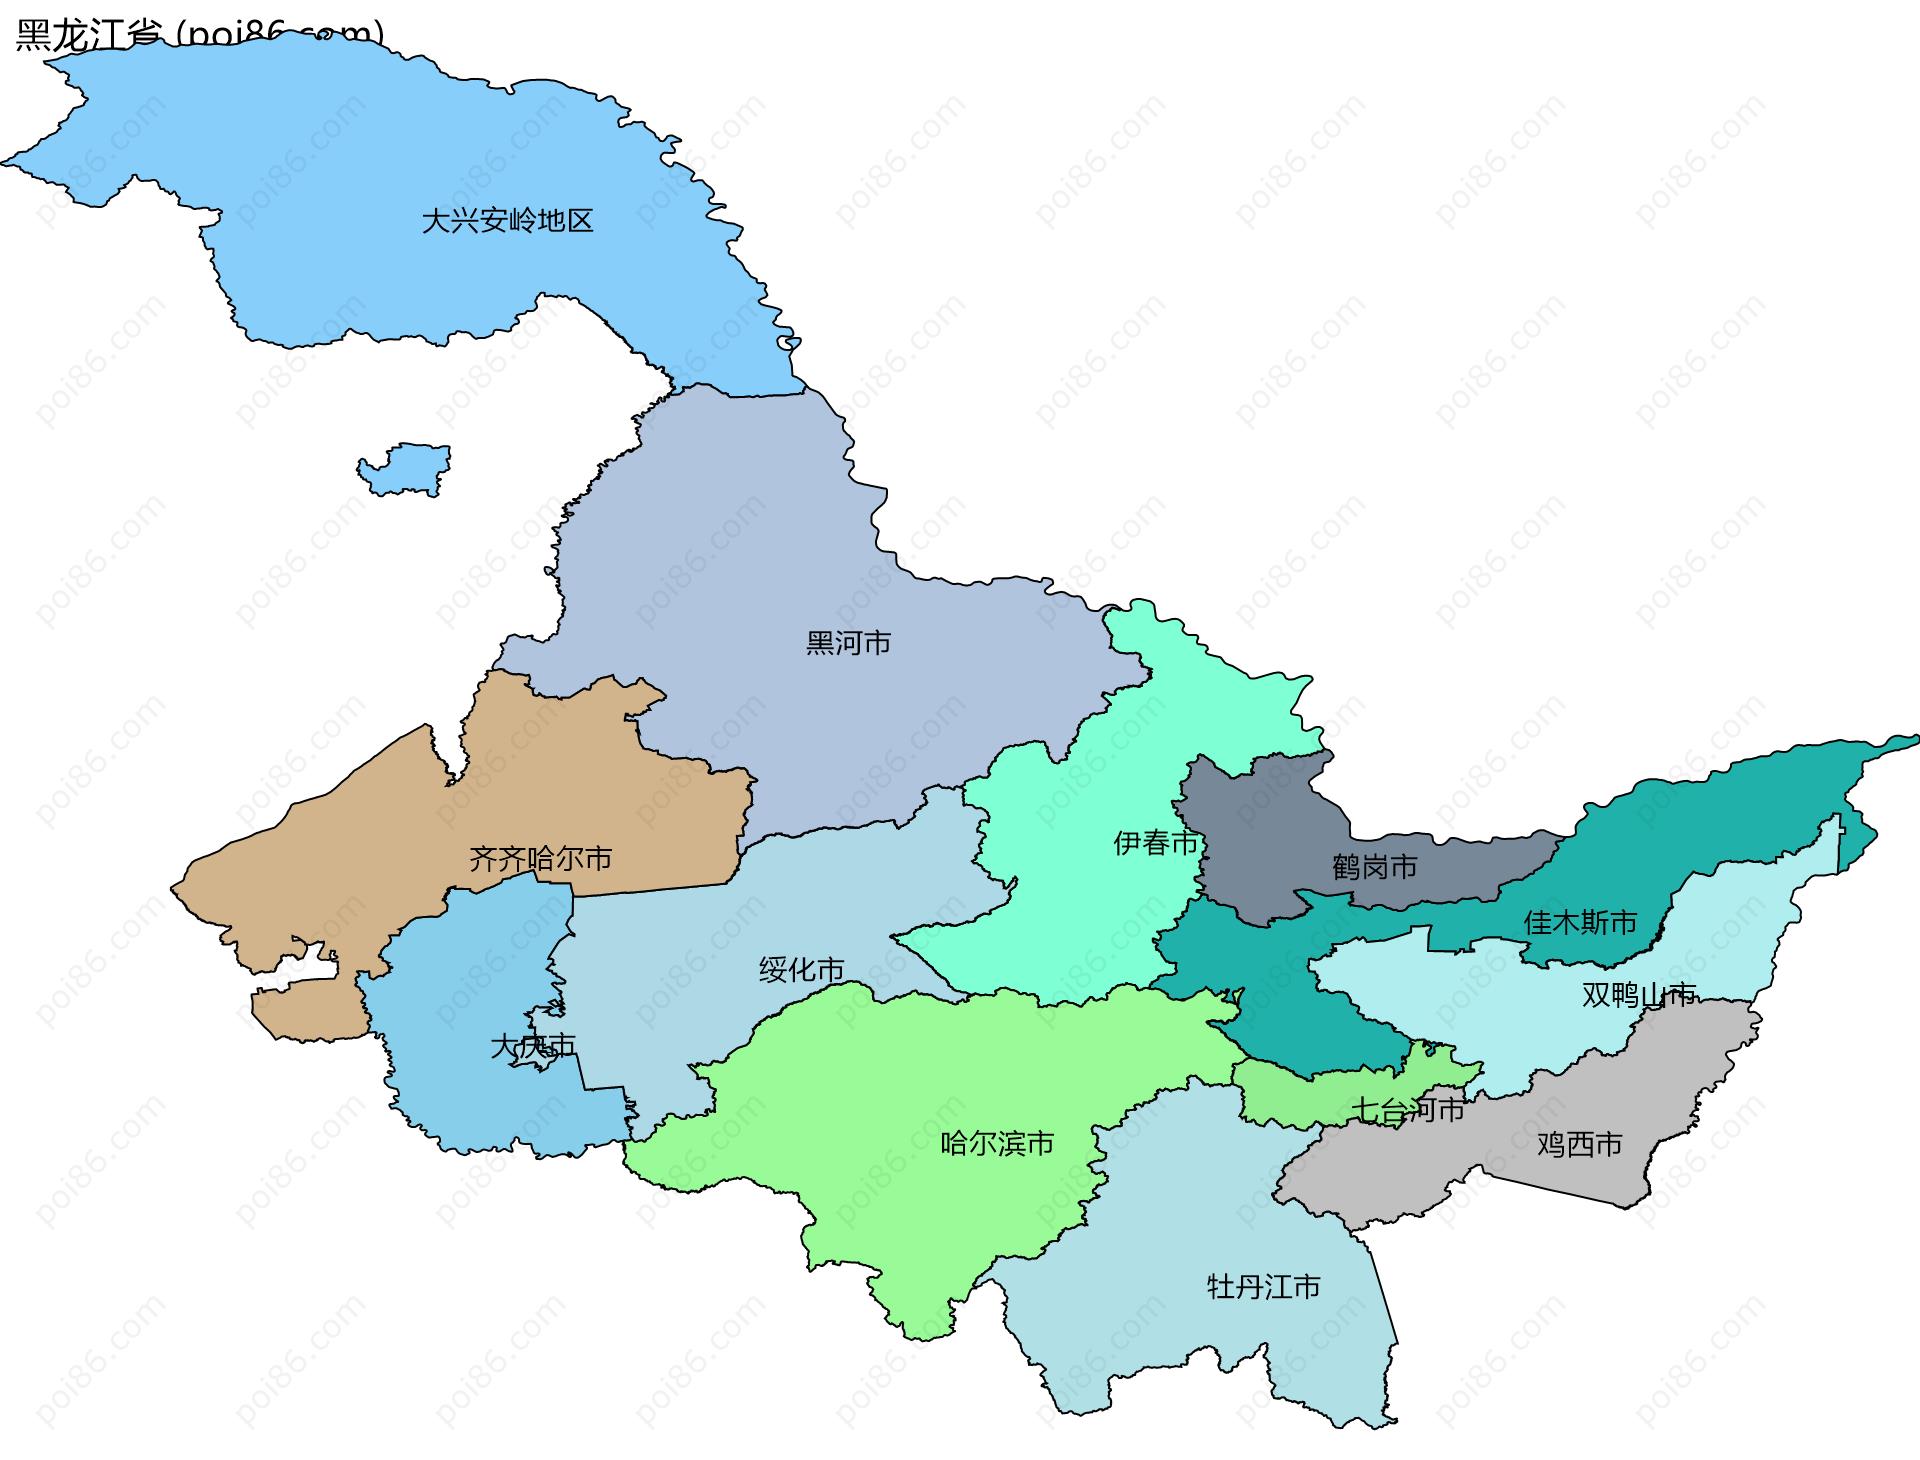 黑龙江省边界地图